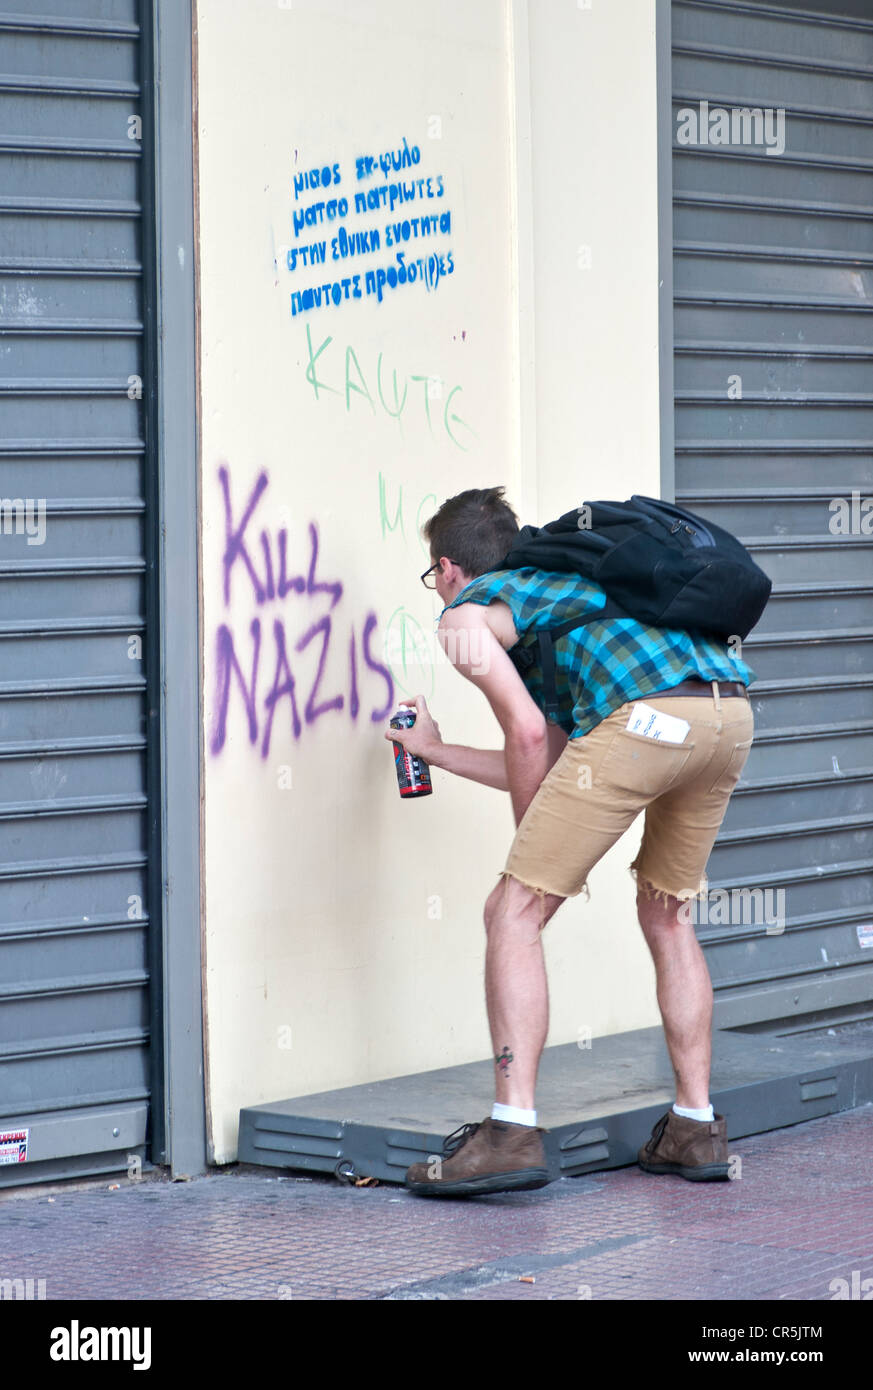 Nazi anti graffitis. Guy écrit avec spray sur le mur ' Kill nazis' Banque D'Images